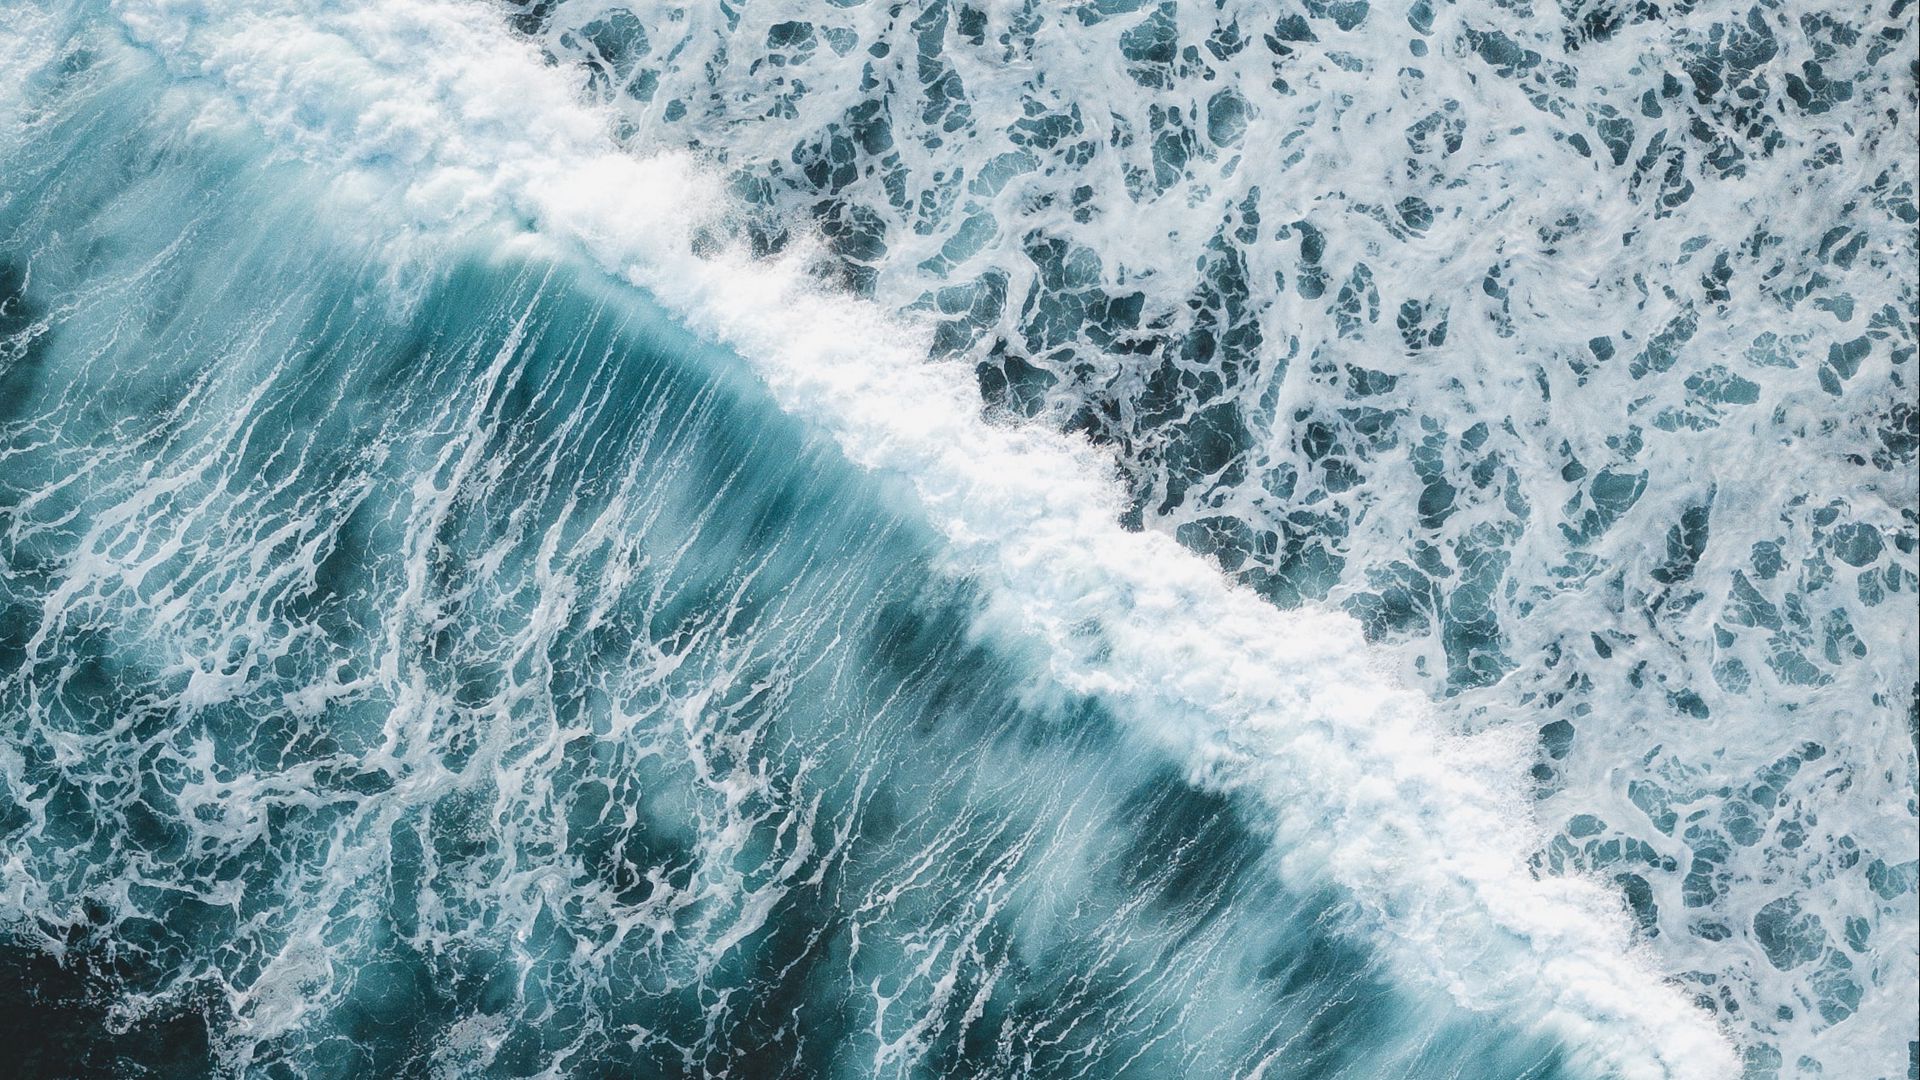 Download wallpaper 1920x1080 waves, ocean, aerial view, water, surf ...